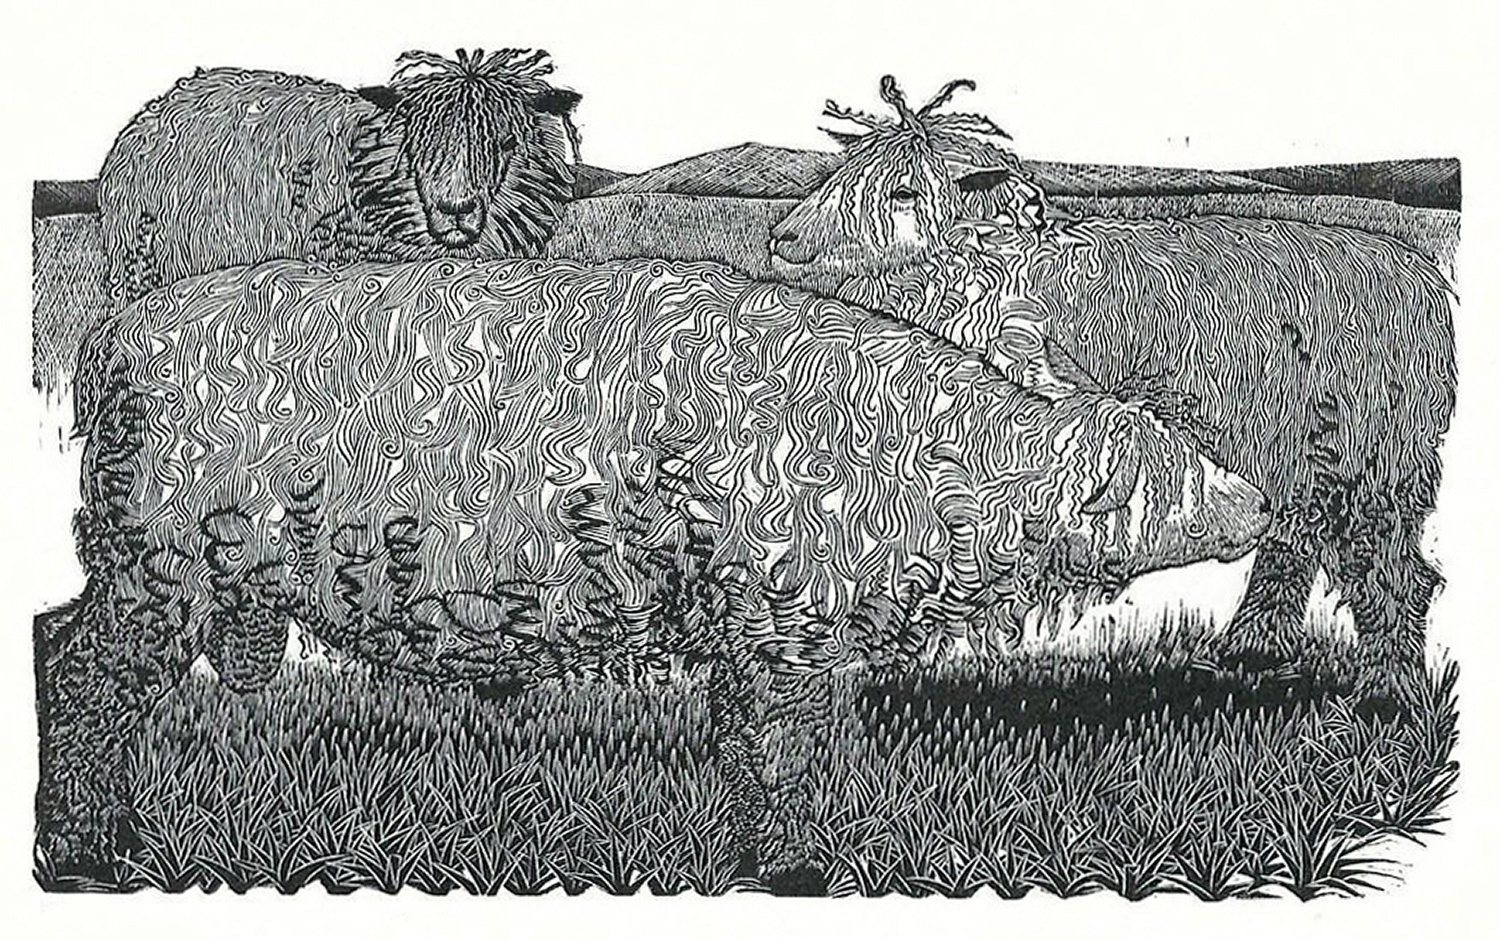 Cotswold Sheep by Sarah Van Niekerk